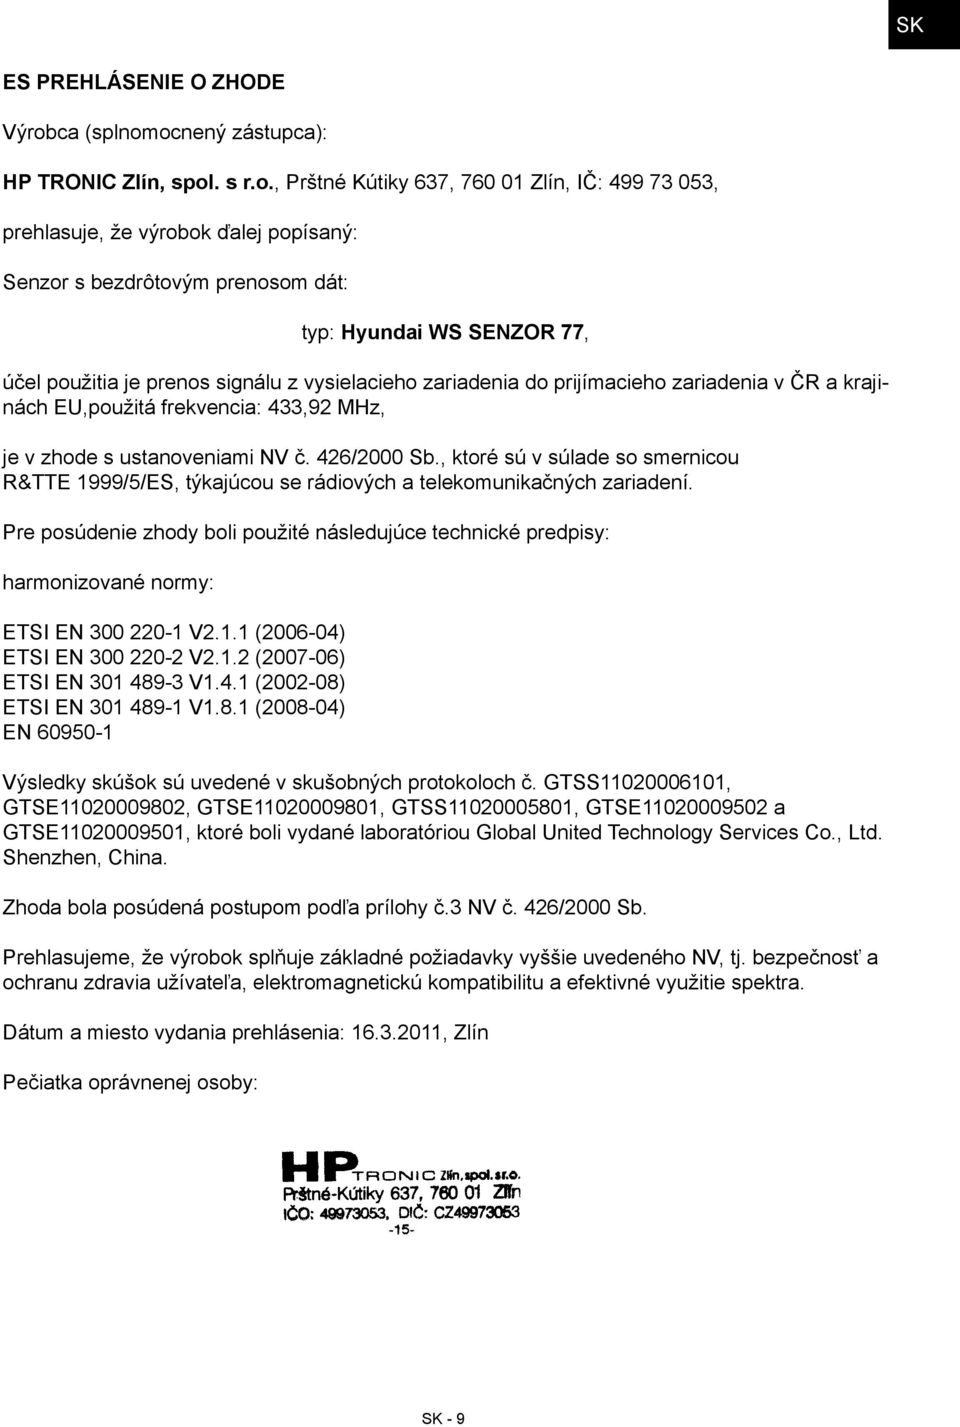 ocnený zástupca): HP TRONIC Zlín, spol. s r.o., Prštné Kútiky 637, 760 01 Zlín, IČ: 499 73 053, prehlasuje, že výrobok ďalej popísaný: Senzor s bezdrôtovým prenosom dát: typ: Hyundai WS SENZOR 77,